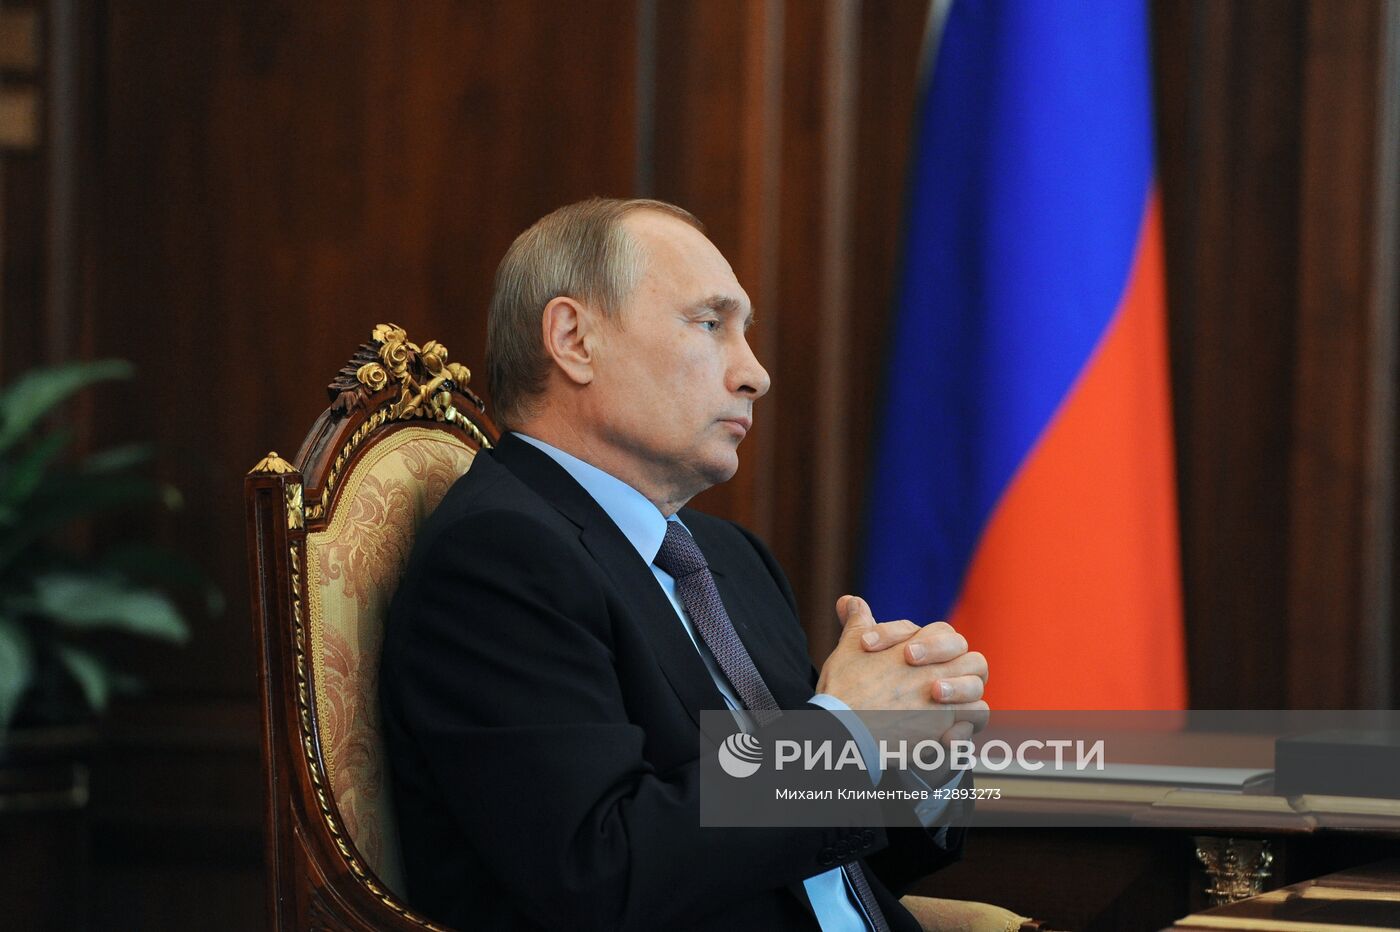 Президент РФ В. Путин провел рабочую встречу с председателем Счётной палаты Т. Голиковой.